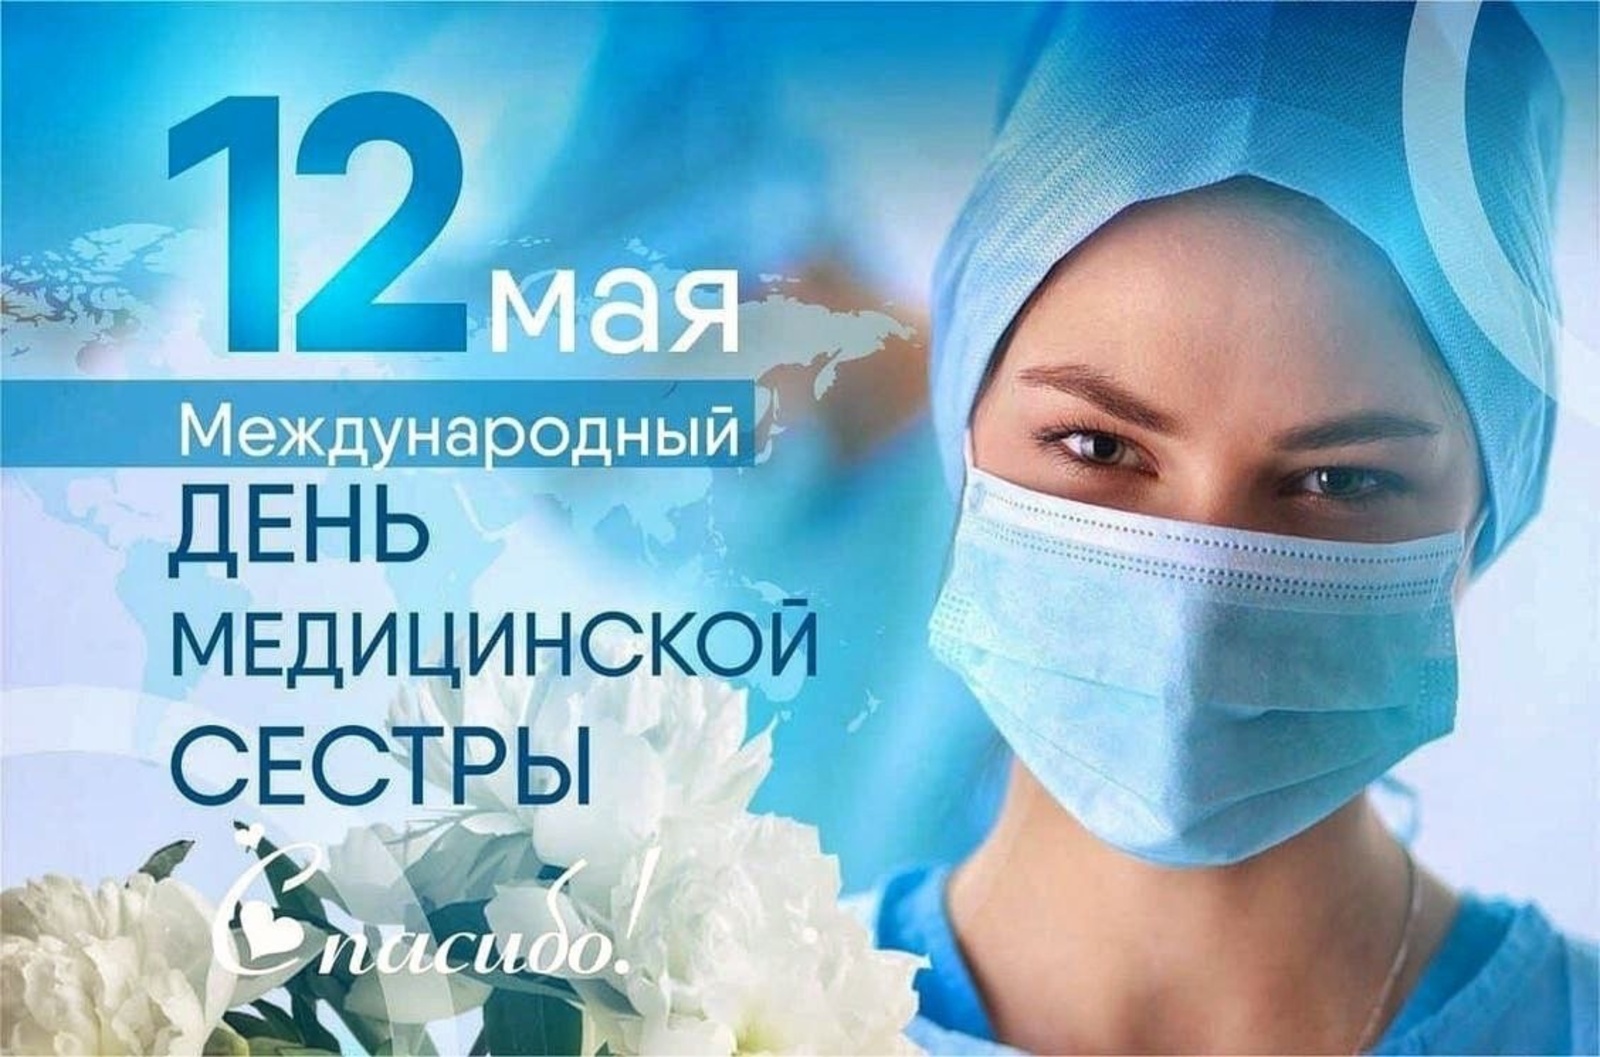 Глава администрации Чишминского района Ришат Мансуров поздравил медицинских сестер с профессиональным праздником